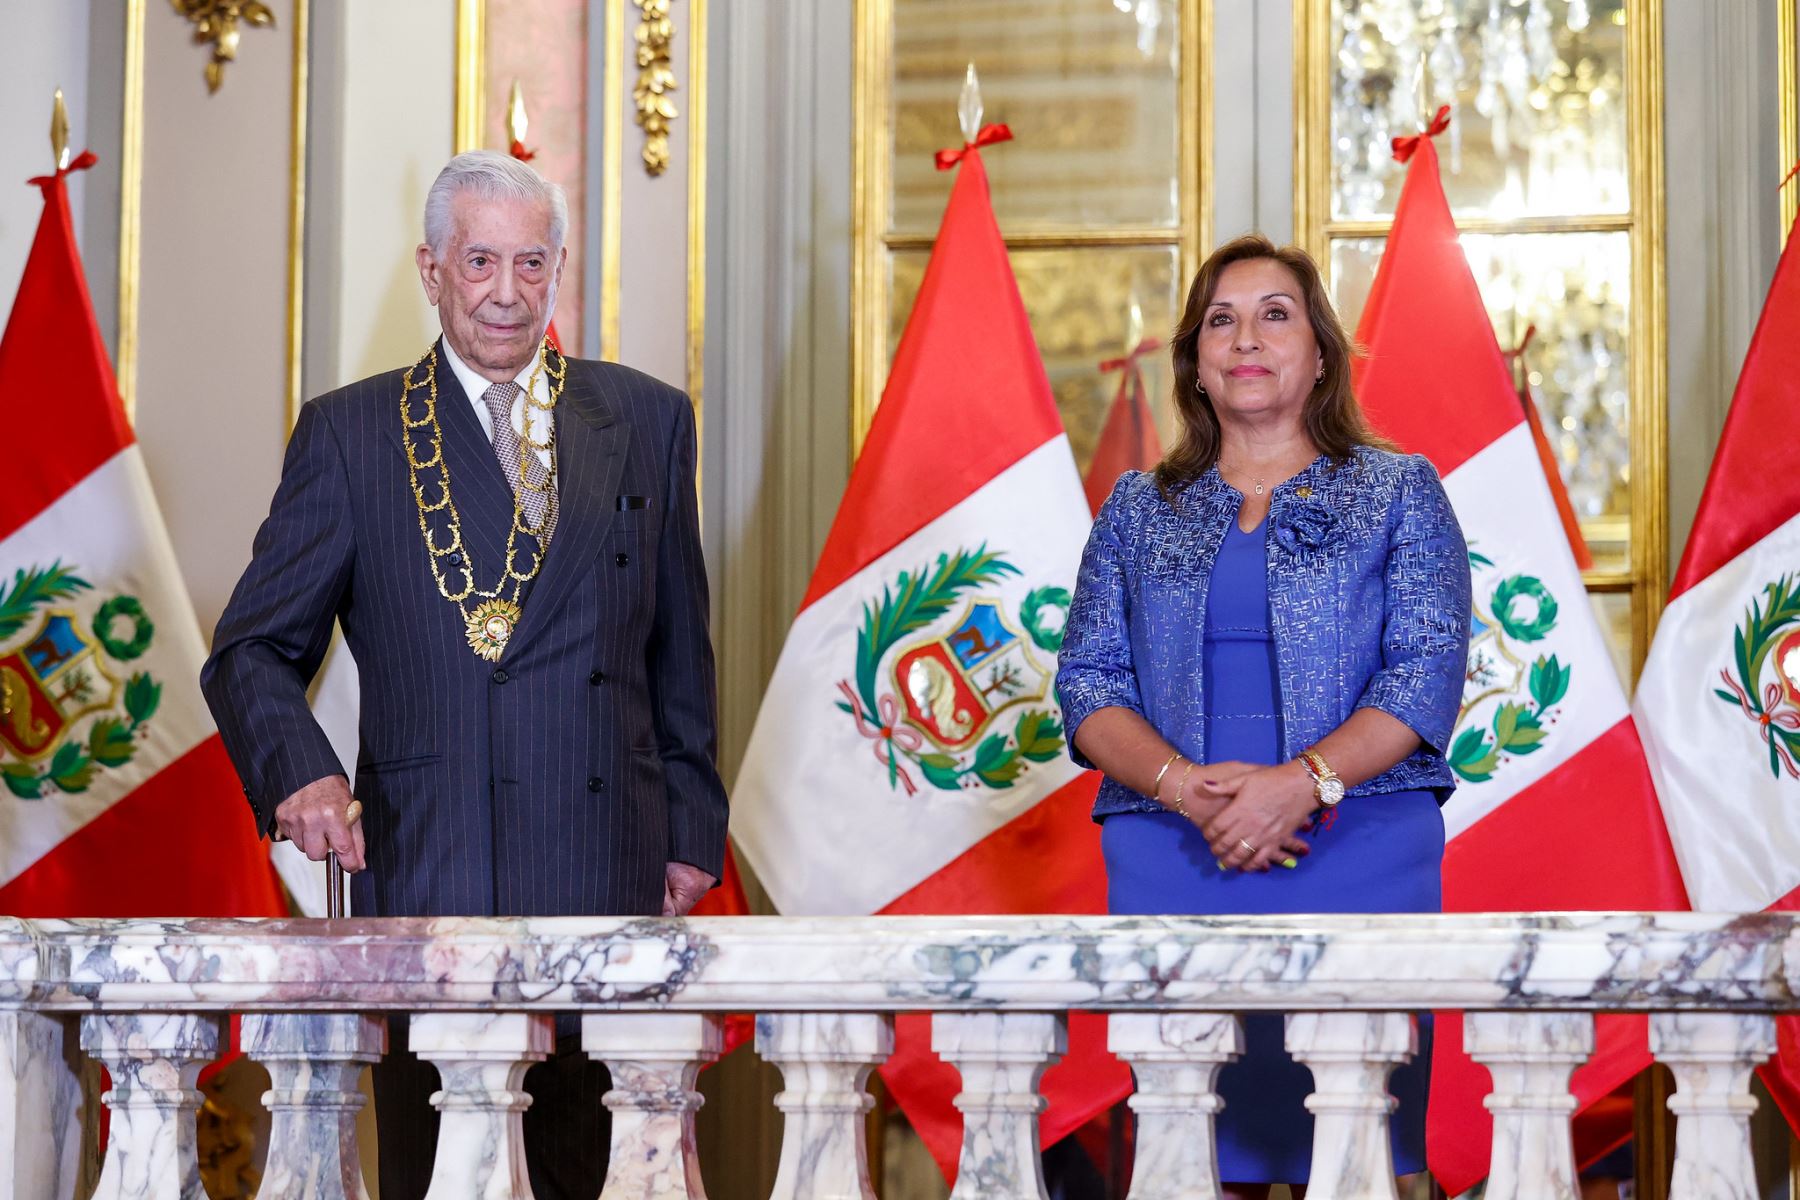 Mario Vargas Llosa recalca que Perú se libró del “zarpazo dictatorial” planeado por Pedro Castillo